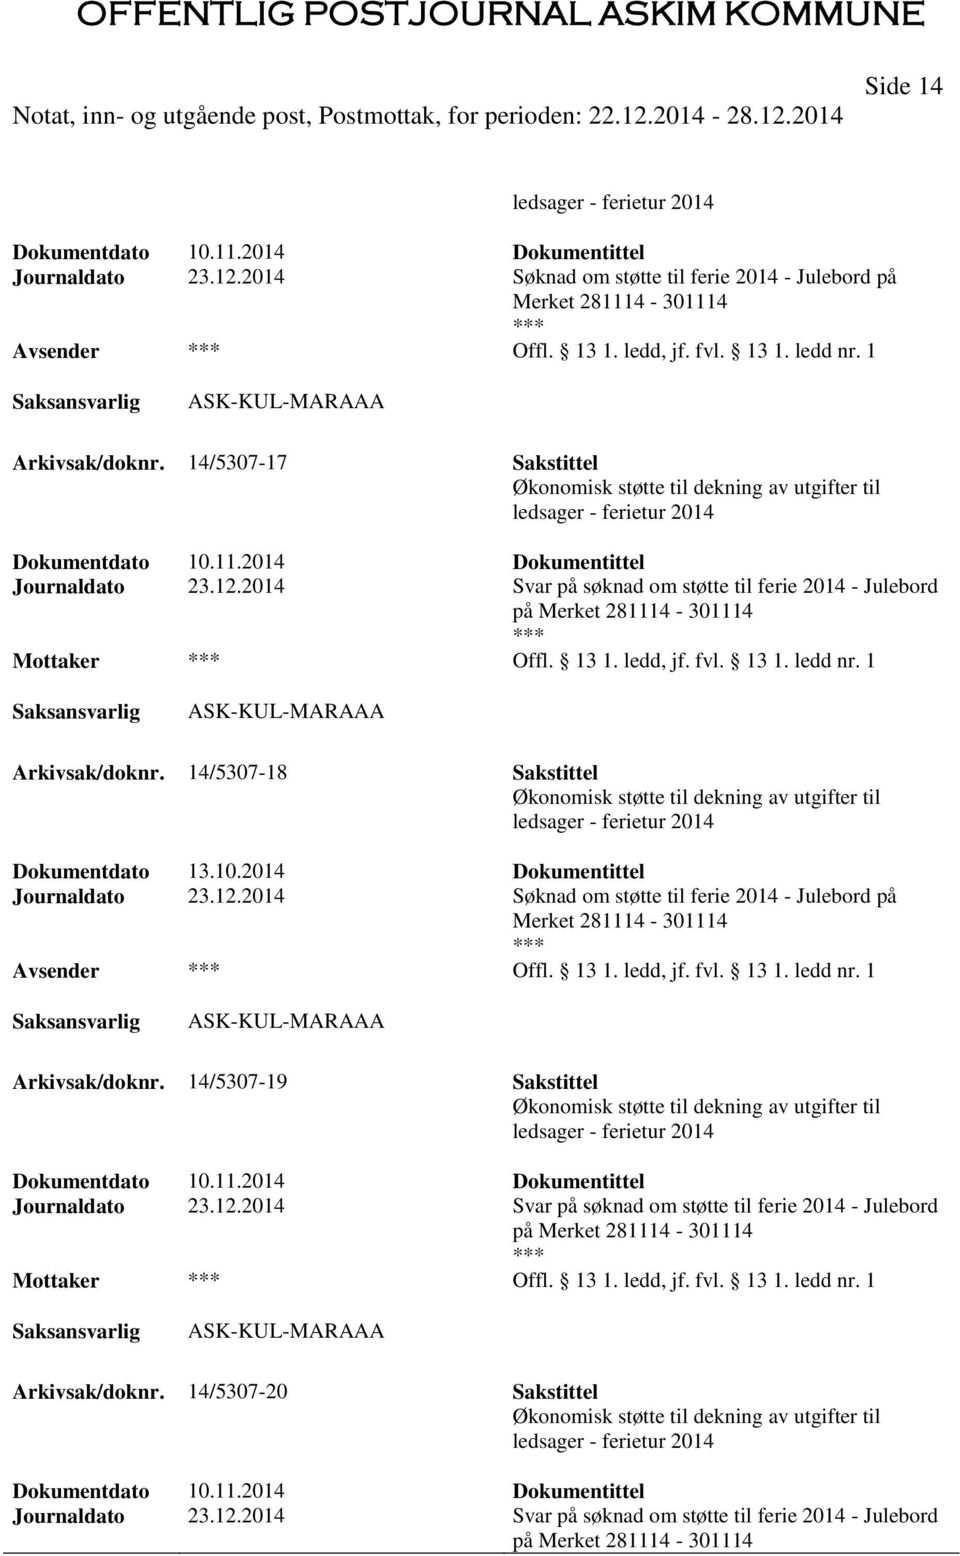 2014 Søknad om støtte til ferie 2014 - Julebord på Merket 281114-301114 Offl. 13 1. ledd, jf. fvl. 13 1. ledd nr. 1 Arkivsak/doknr. 14/5307-19 Sakstittel Journaldato 23.12.